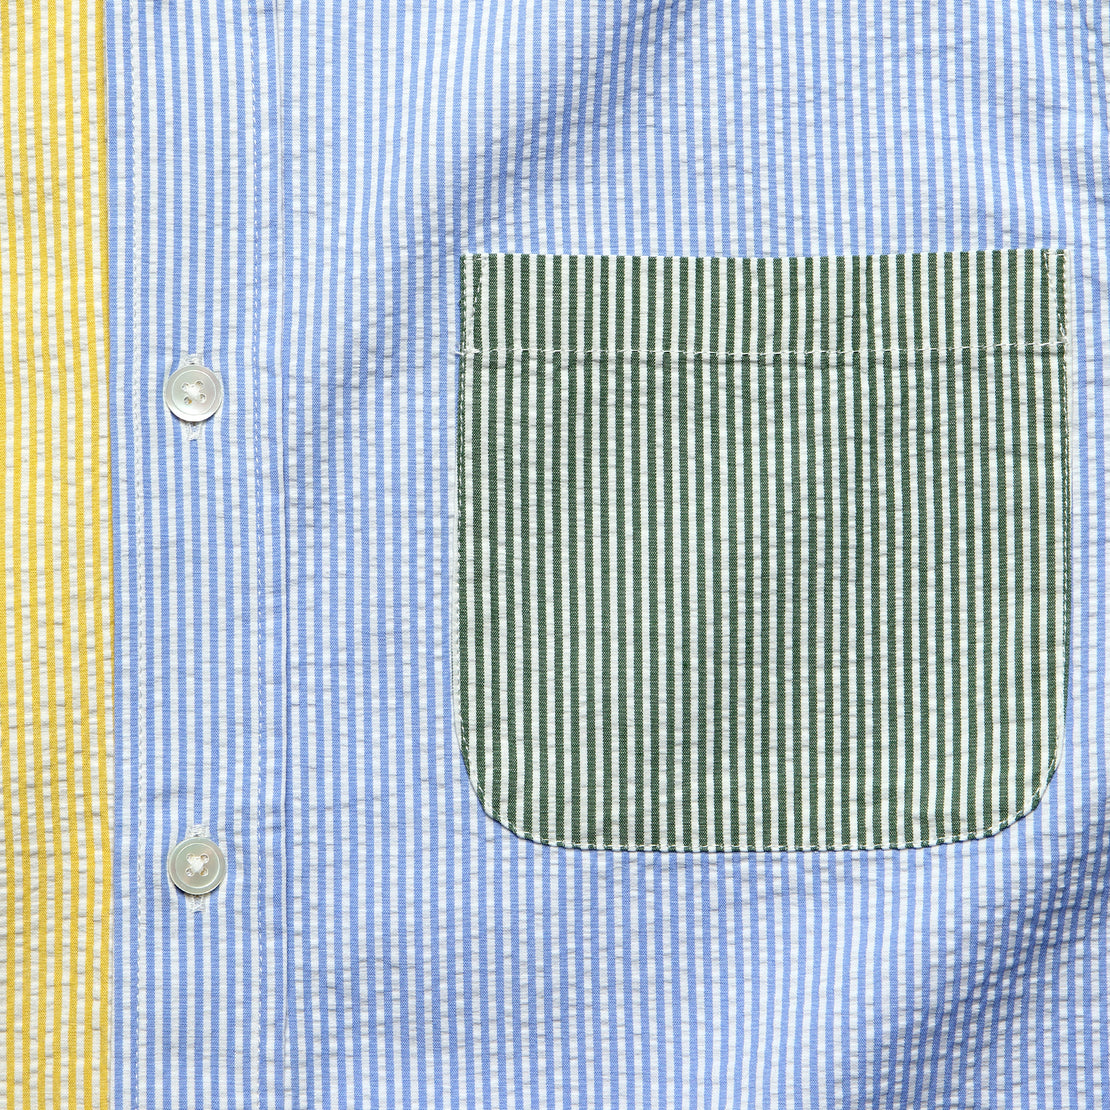 Atlantico Seersucker Shirt - Patchwork - Portuguese Flannel - STAG Provisions - Tops - S/S Woven - Seersucker